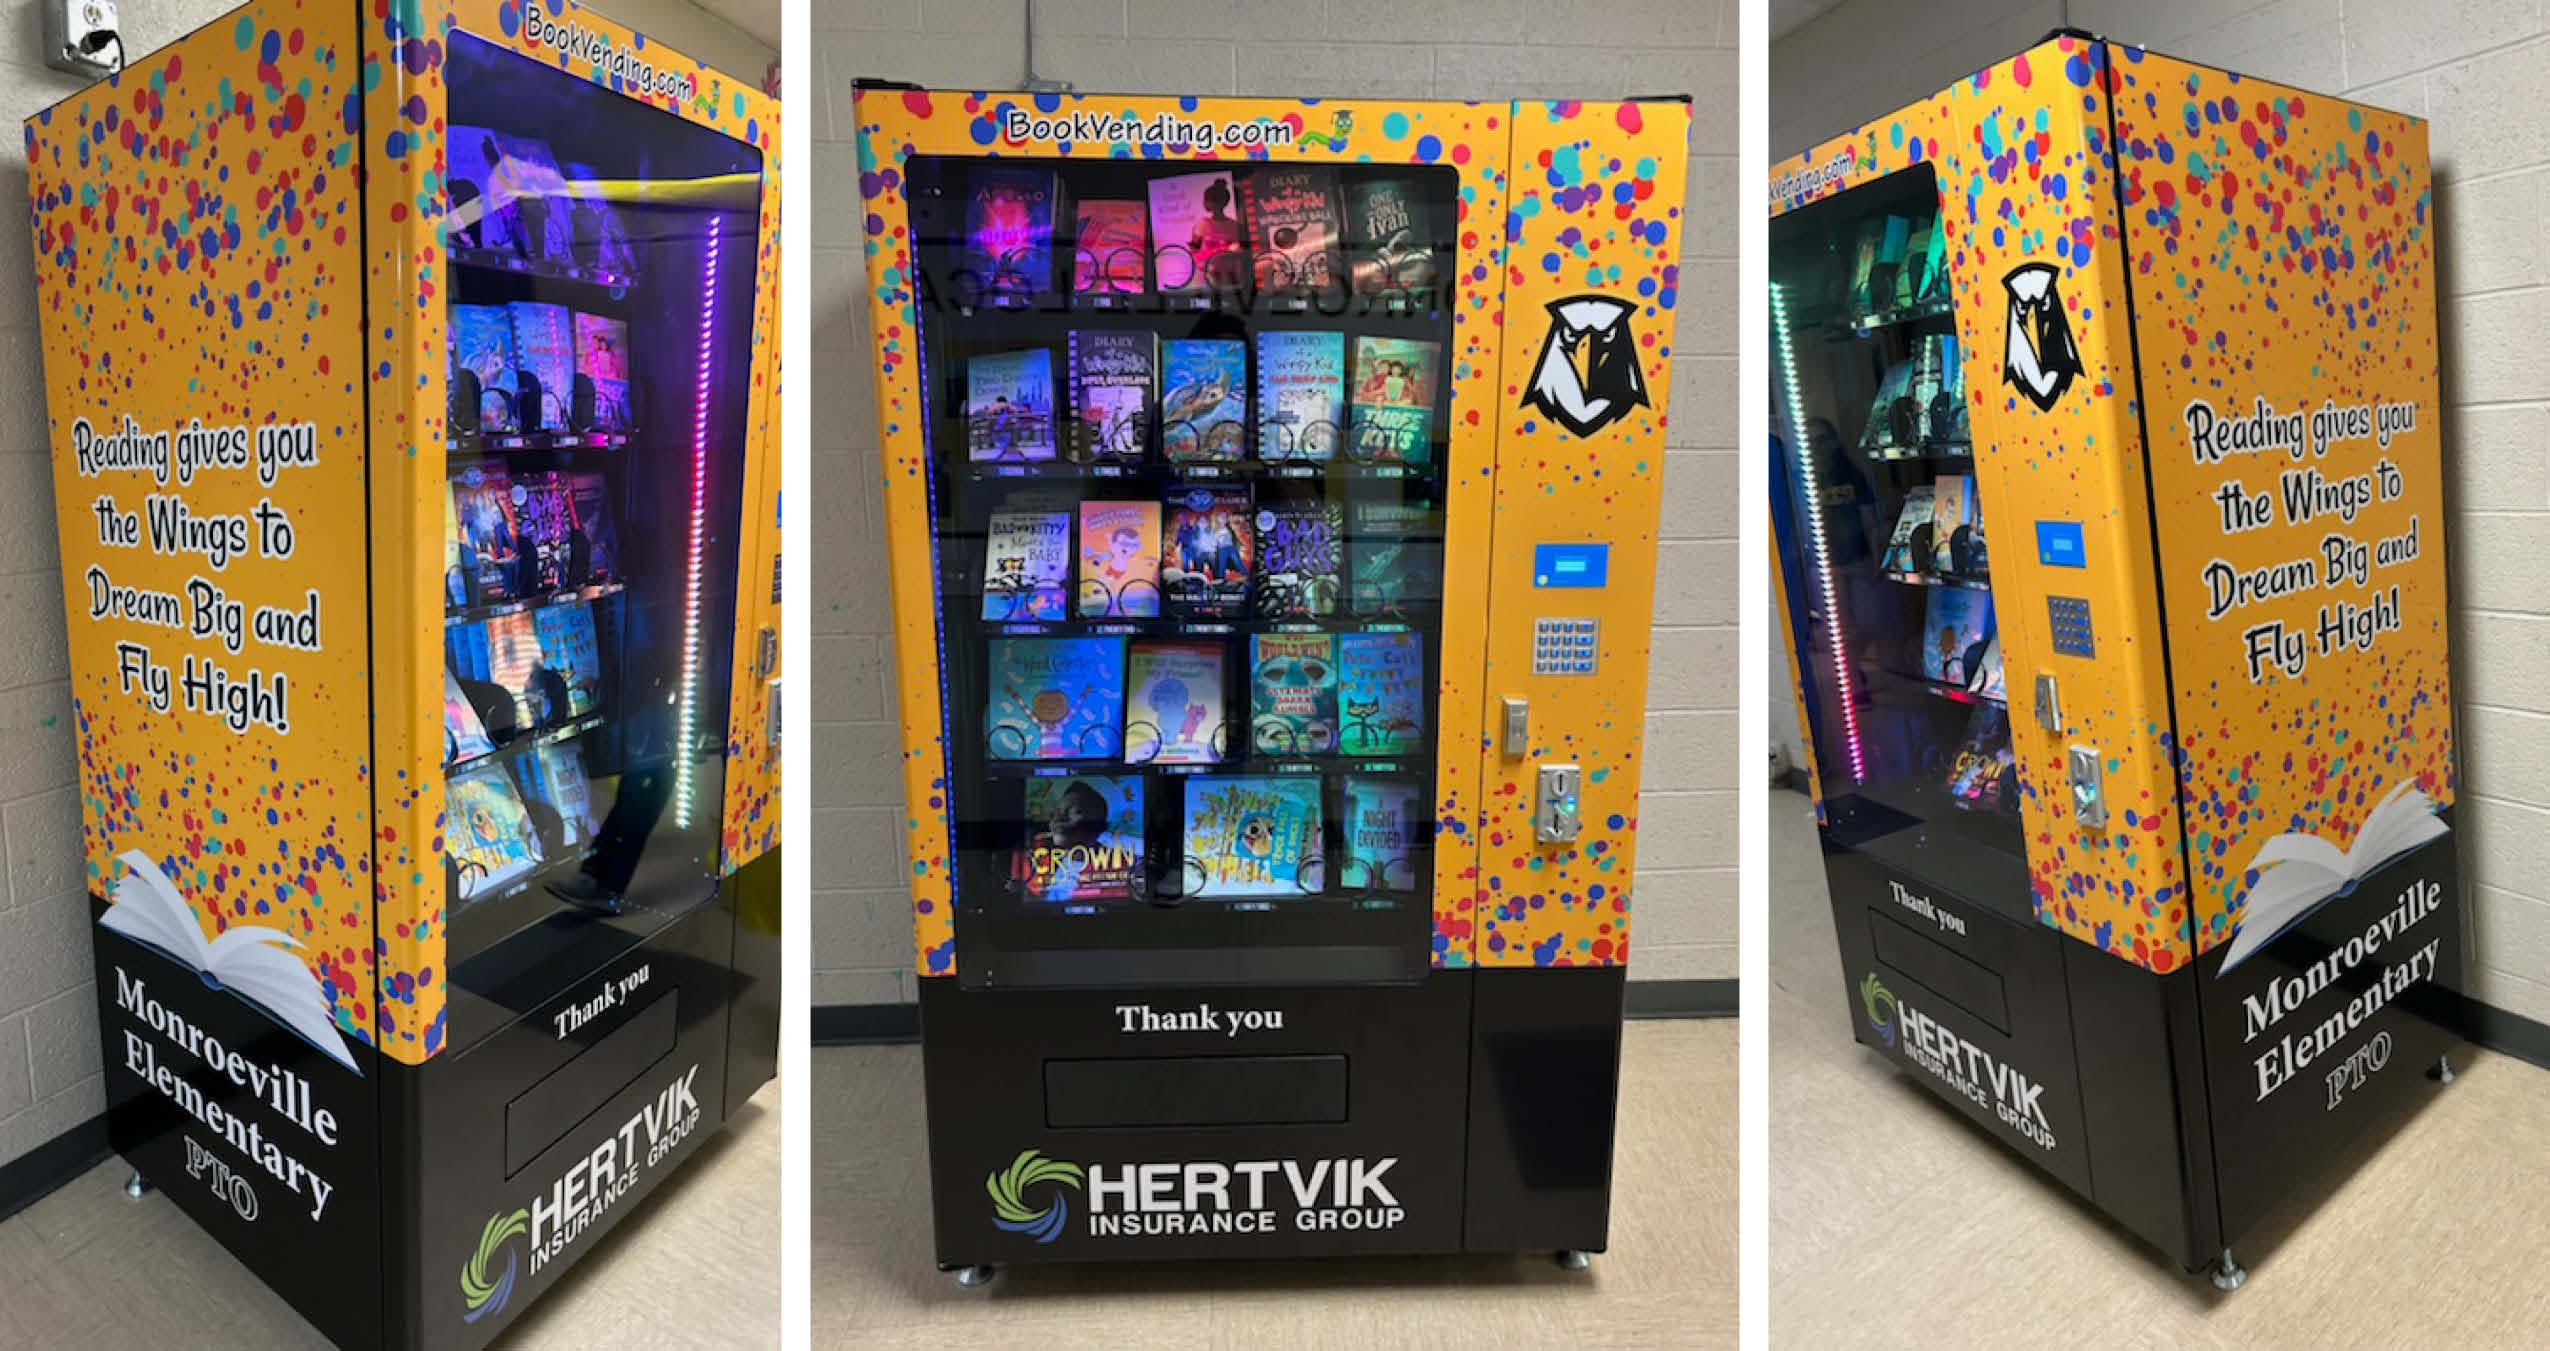 Hertvik Insurance Hertvik Cares Monroeville City Schools PTO Book Vending Machine